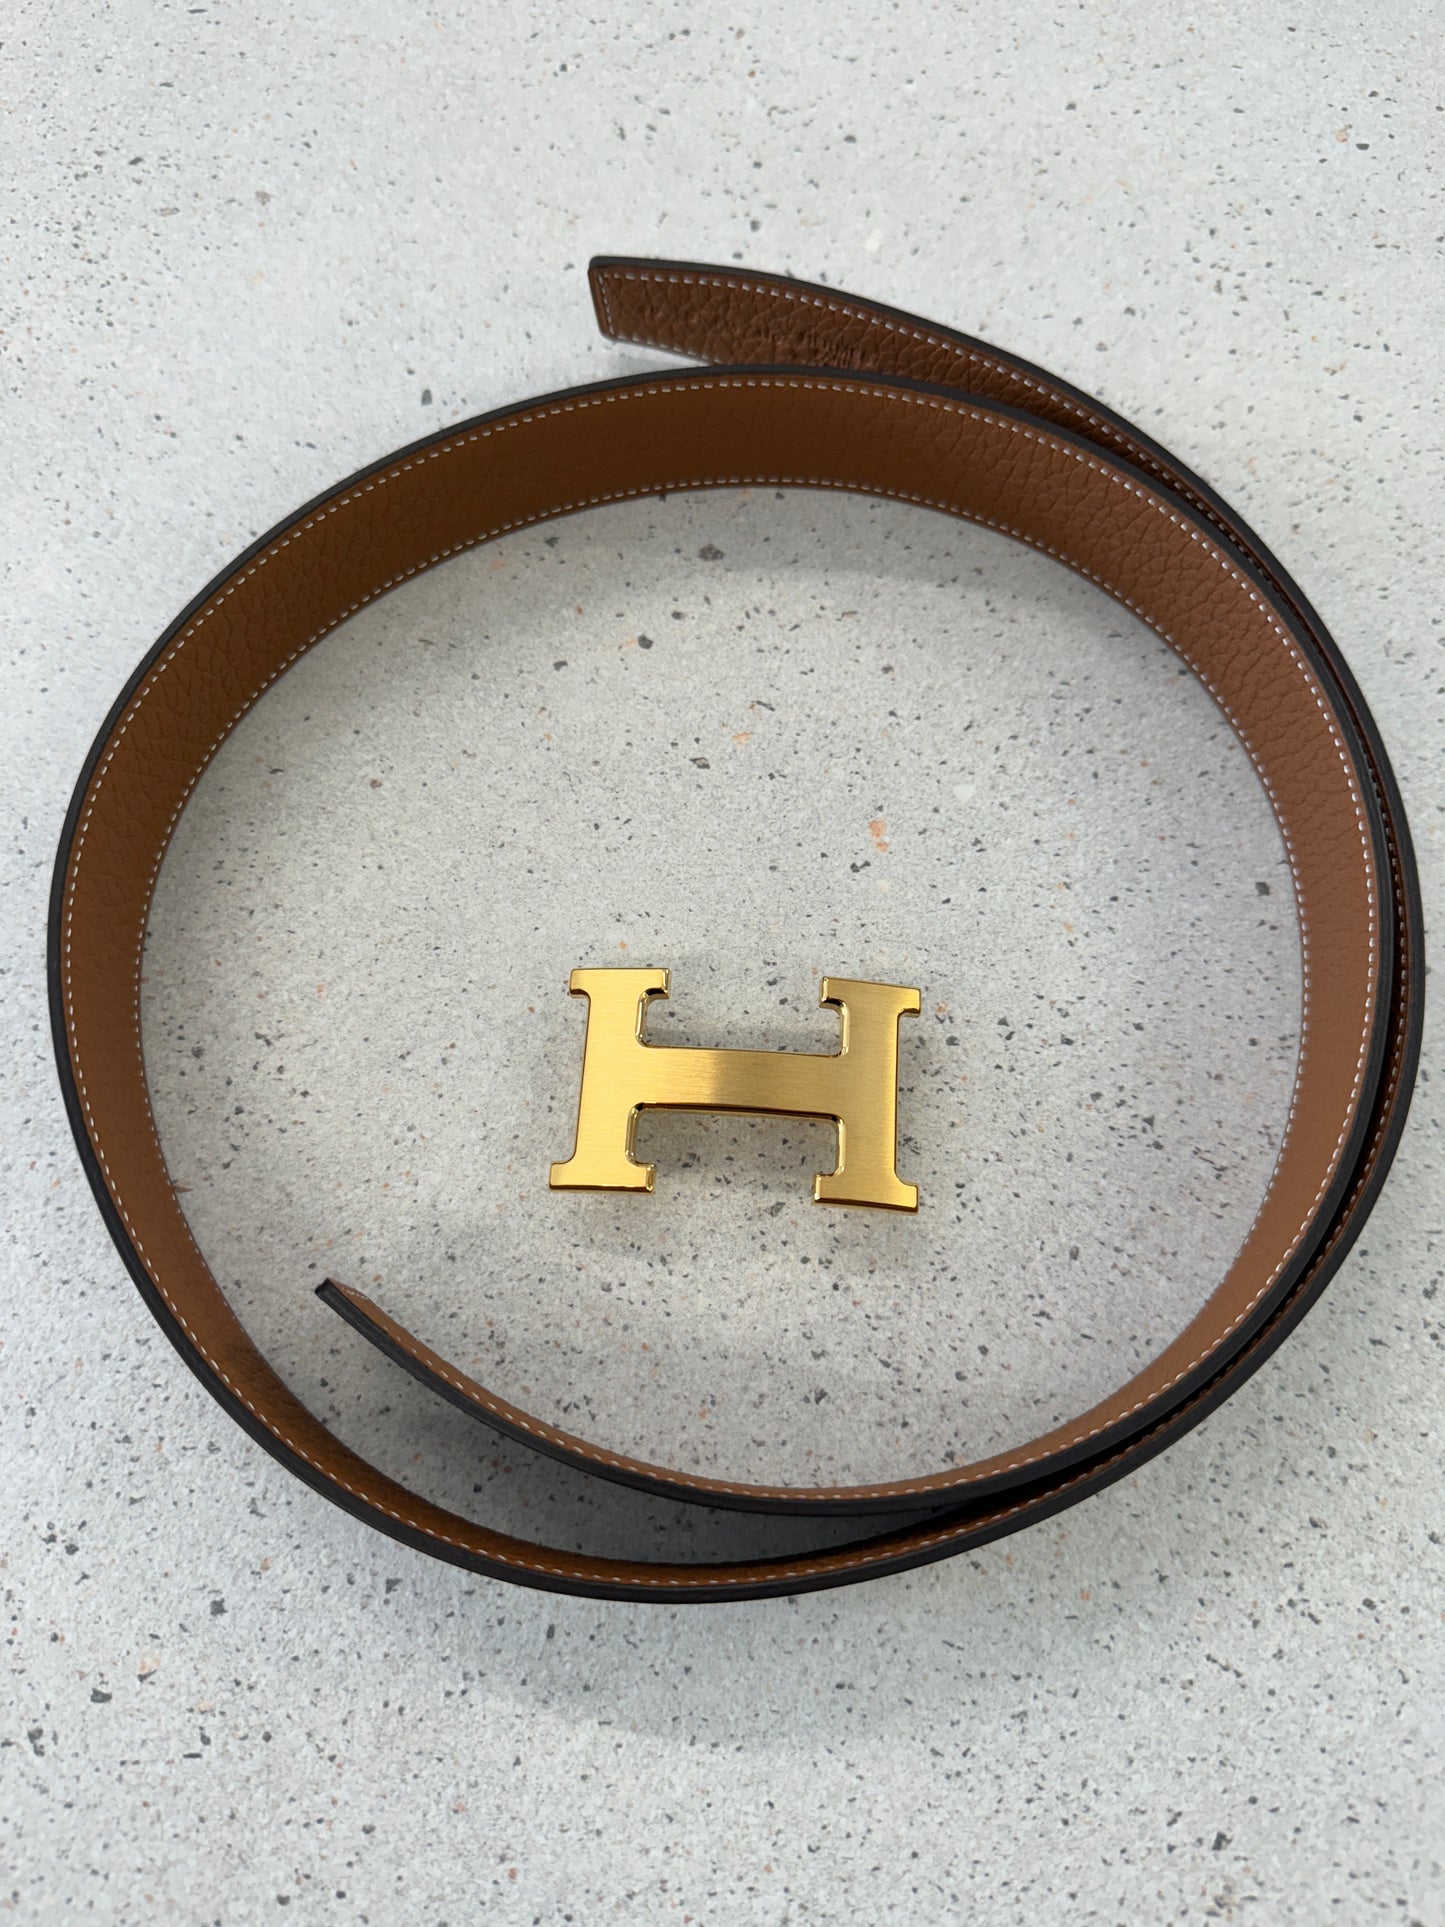 Hermes Men's Belt - 32mm (90cm) in Black/Gold